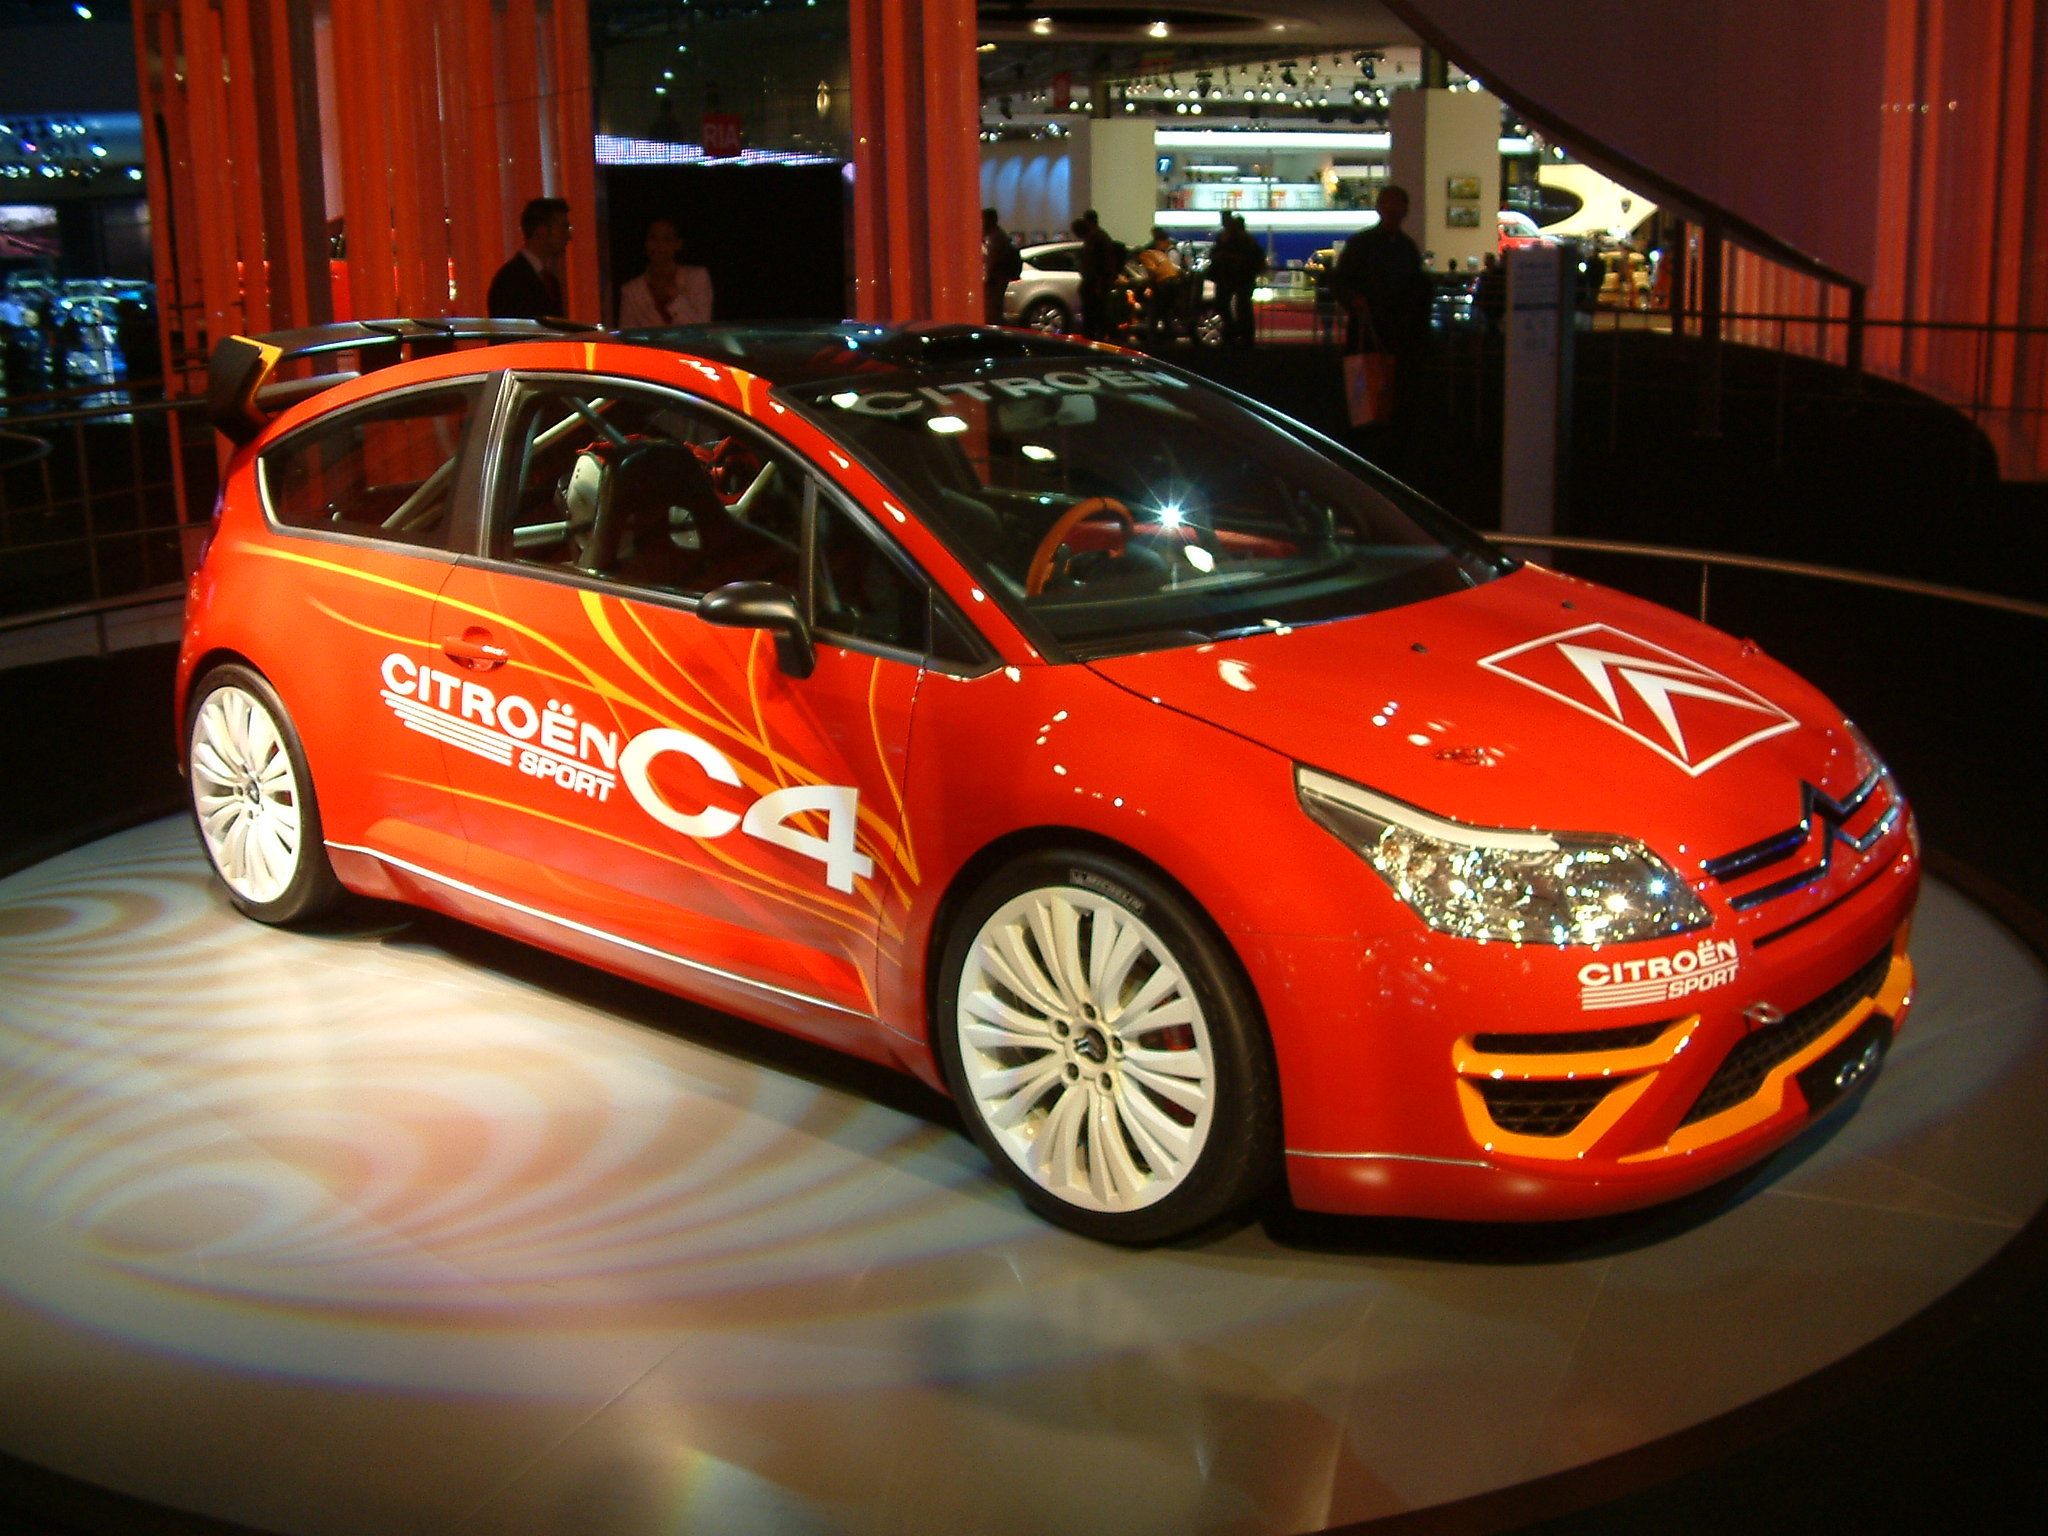 Citroën C4 - Vicipaedia